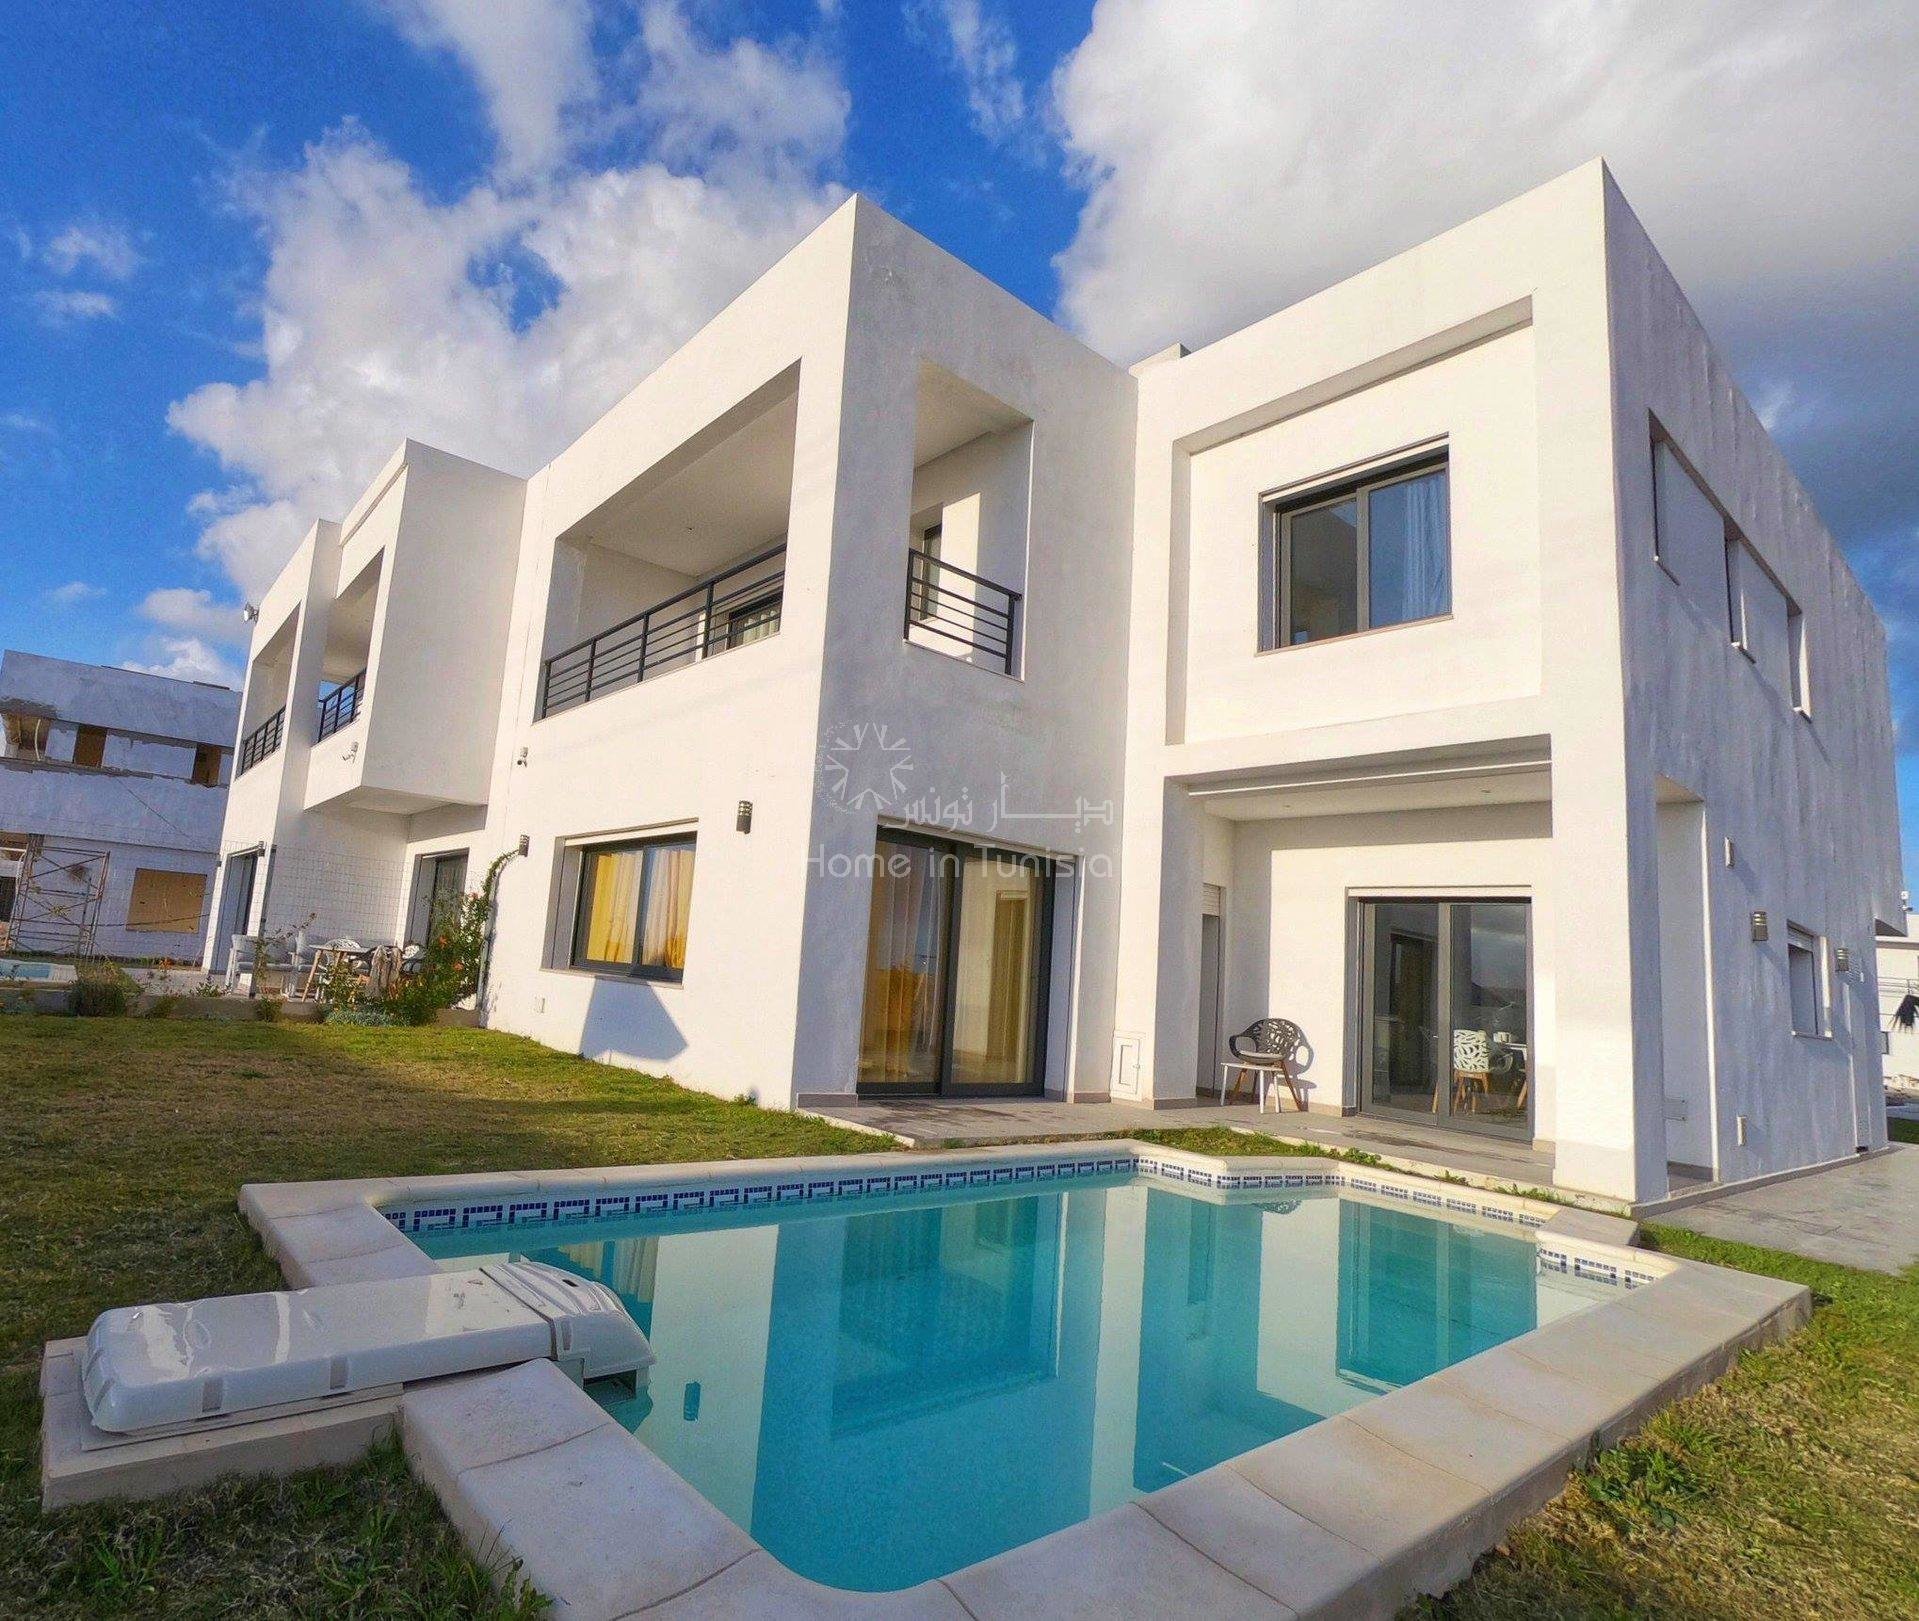 Villa golf isolée neuve de 367 m2 avec 4 chambres terrasse jardin piscine